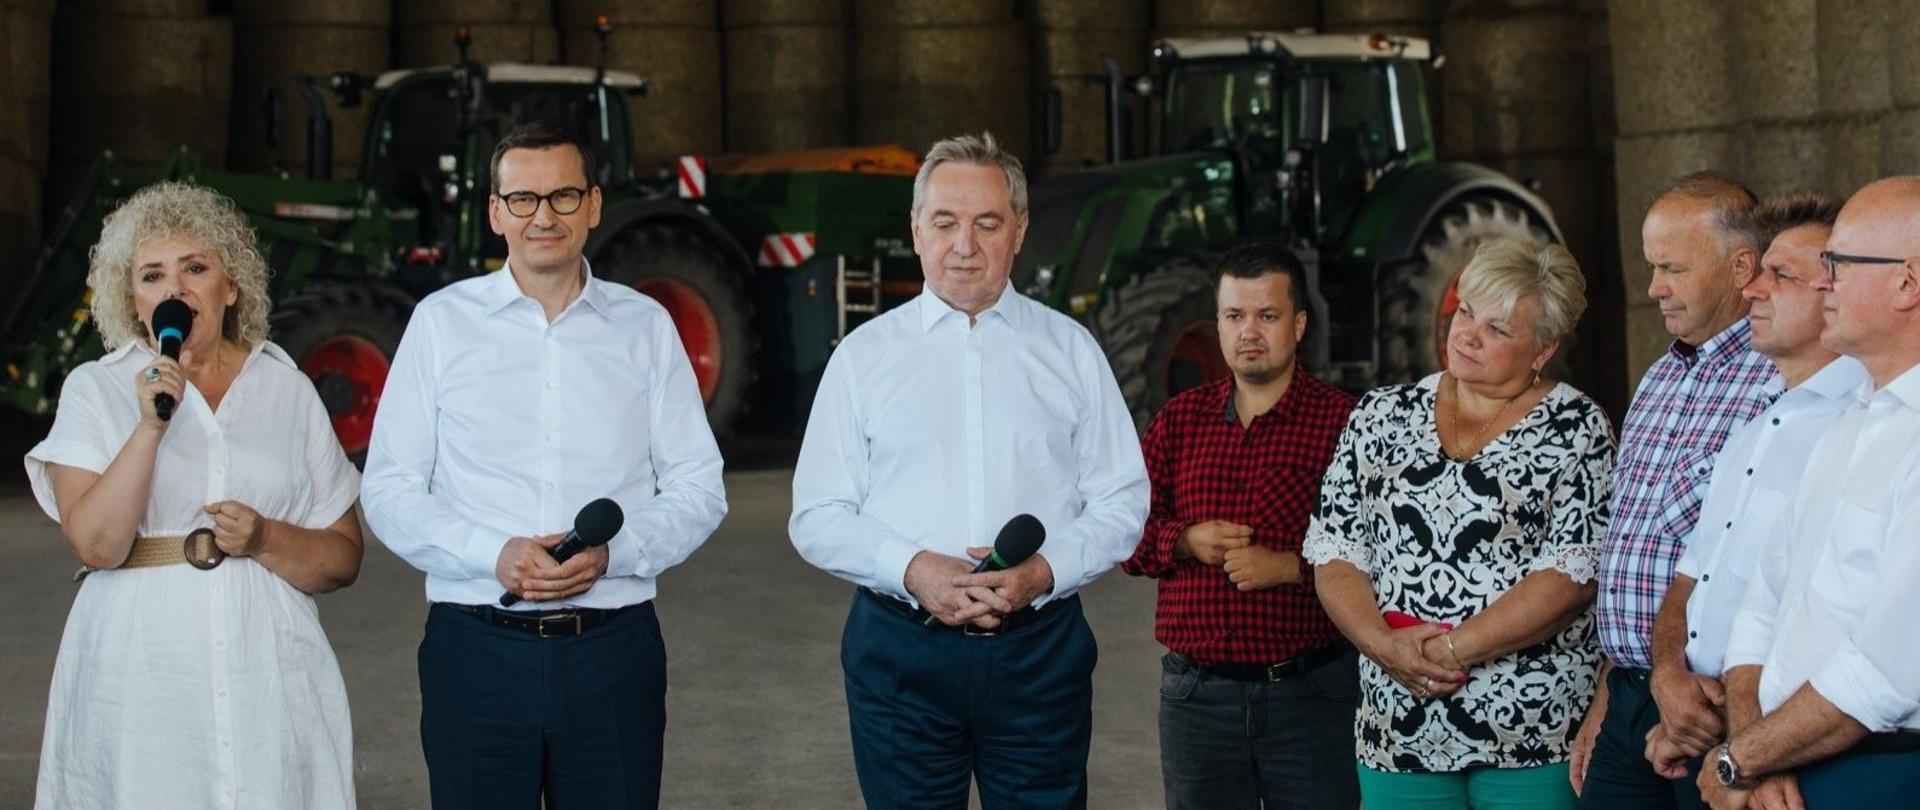 Wicepremier Henryk Kowalczyk towarzyszył dziś premierowi Mateuszowi Morawieckiemu podczas wizyty w gospodarstwie rolnym w Kózkach w powiecie węgrowskim